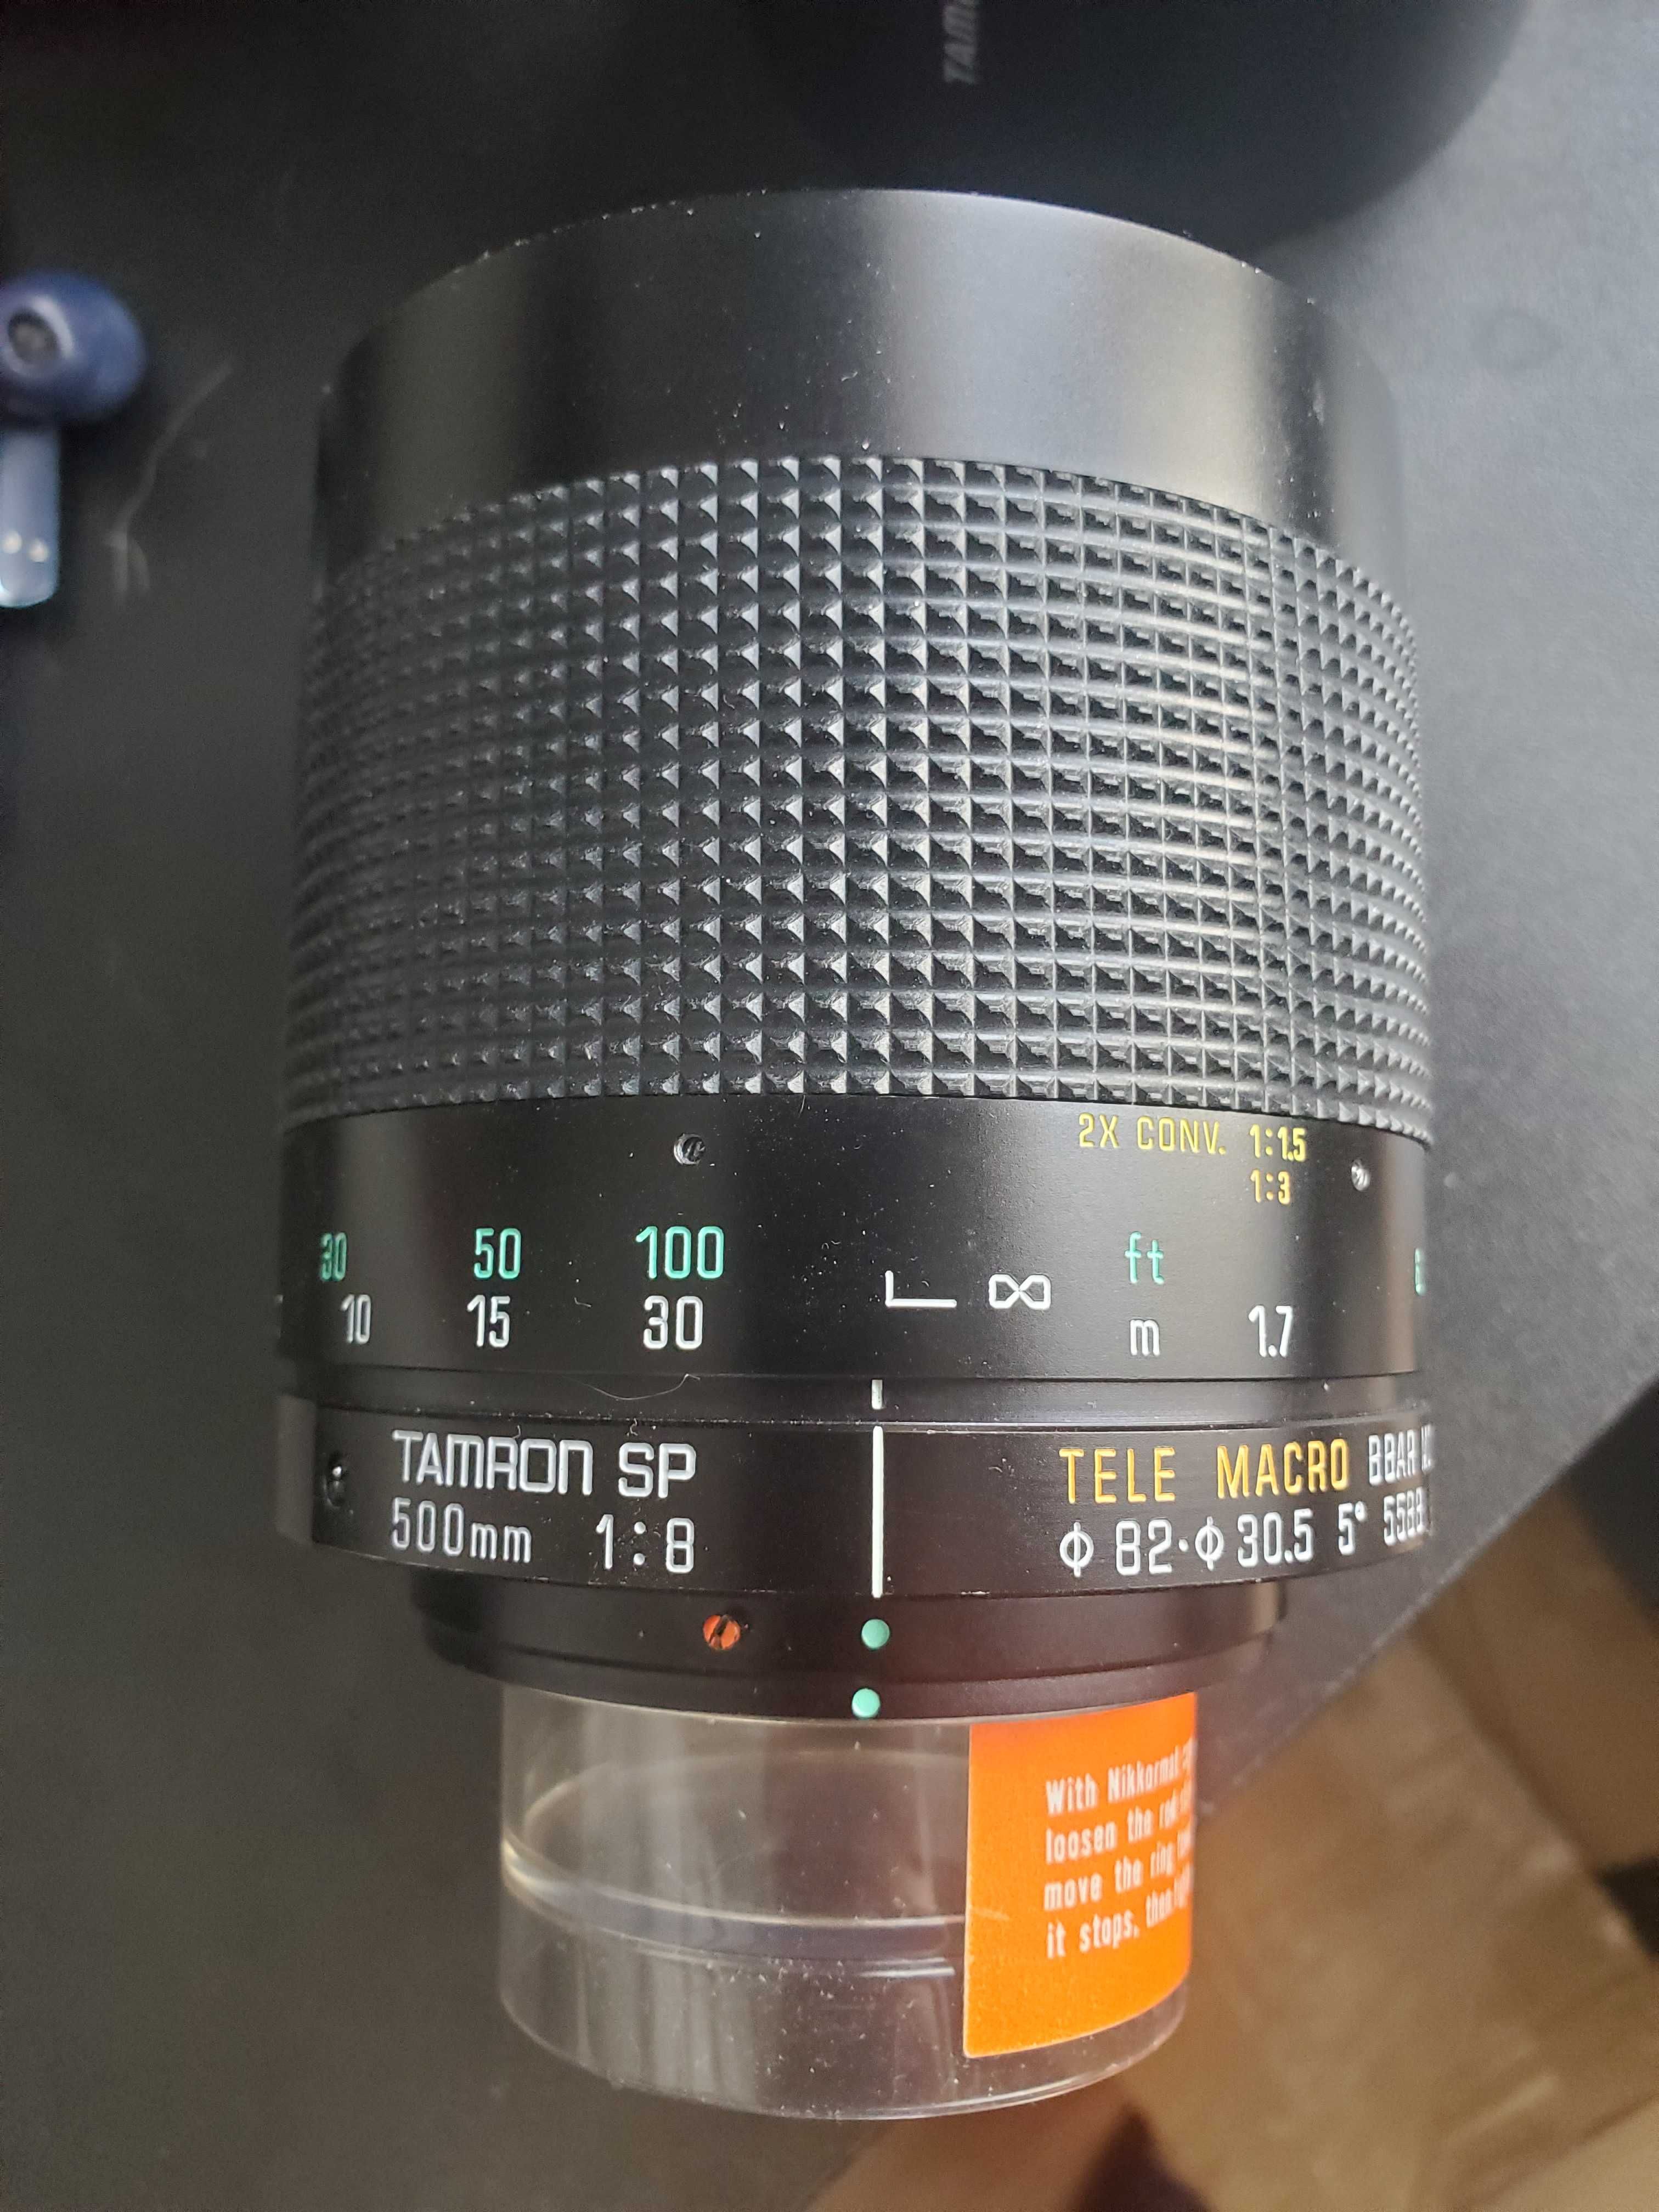 Obiektyw Tamron SP 500mm 1:8 Tele macro 55BB Adaptall